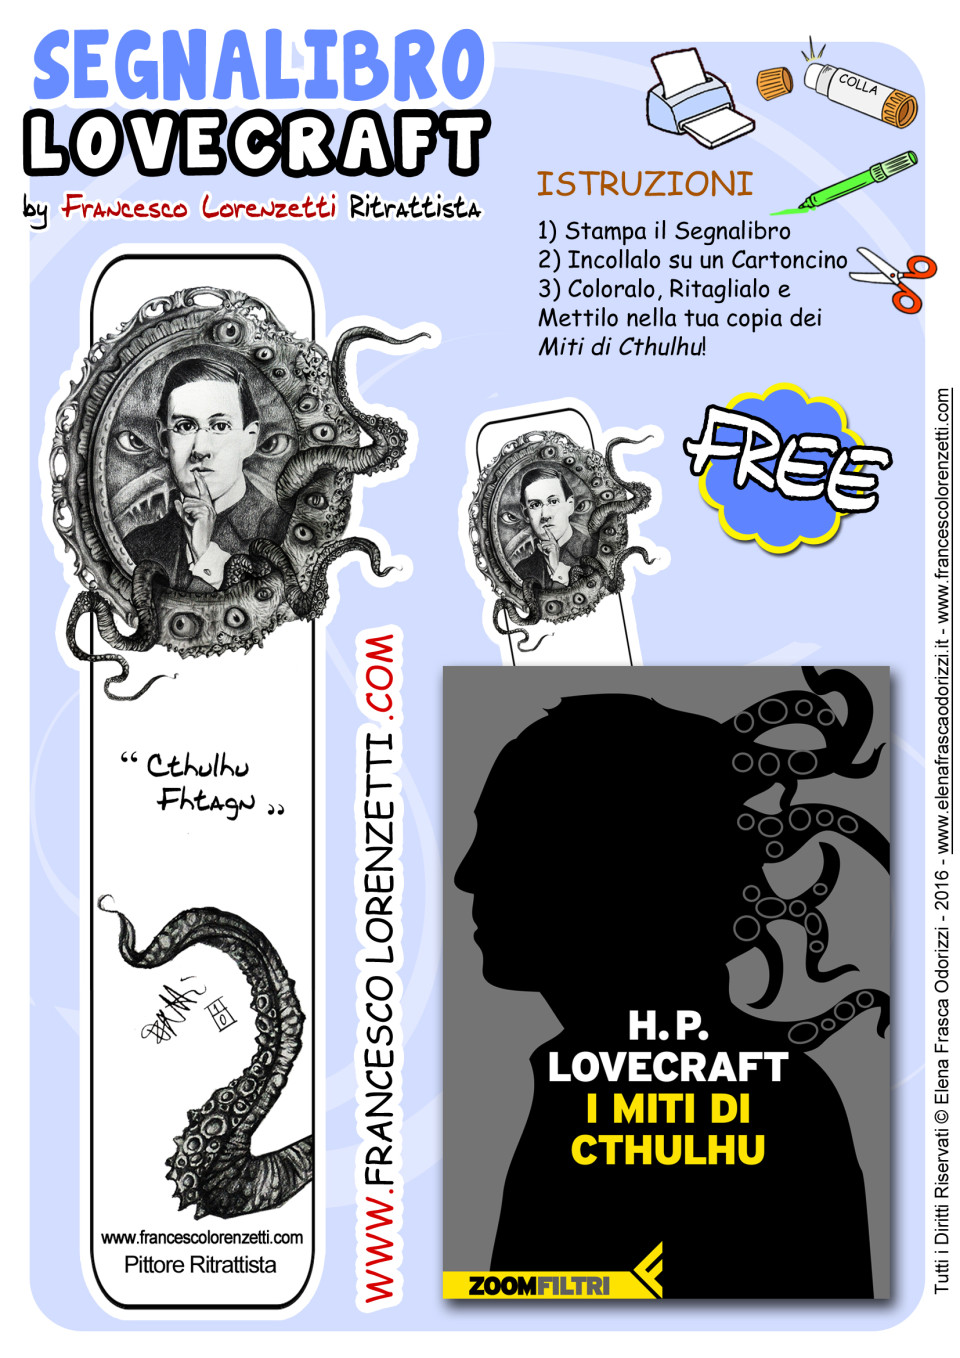 segnalibro_bookmark_printable_lovecraft_francesco_lorenzetti_ritrattista